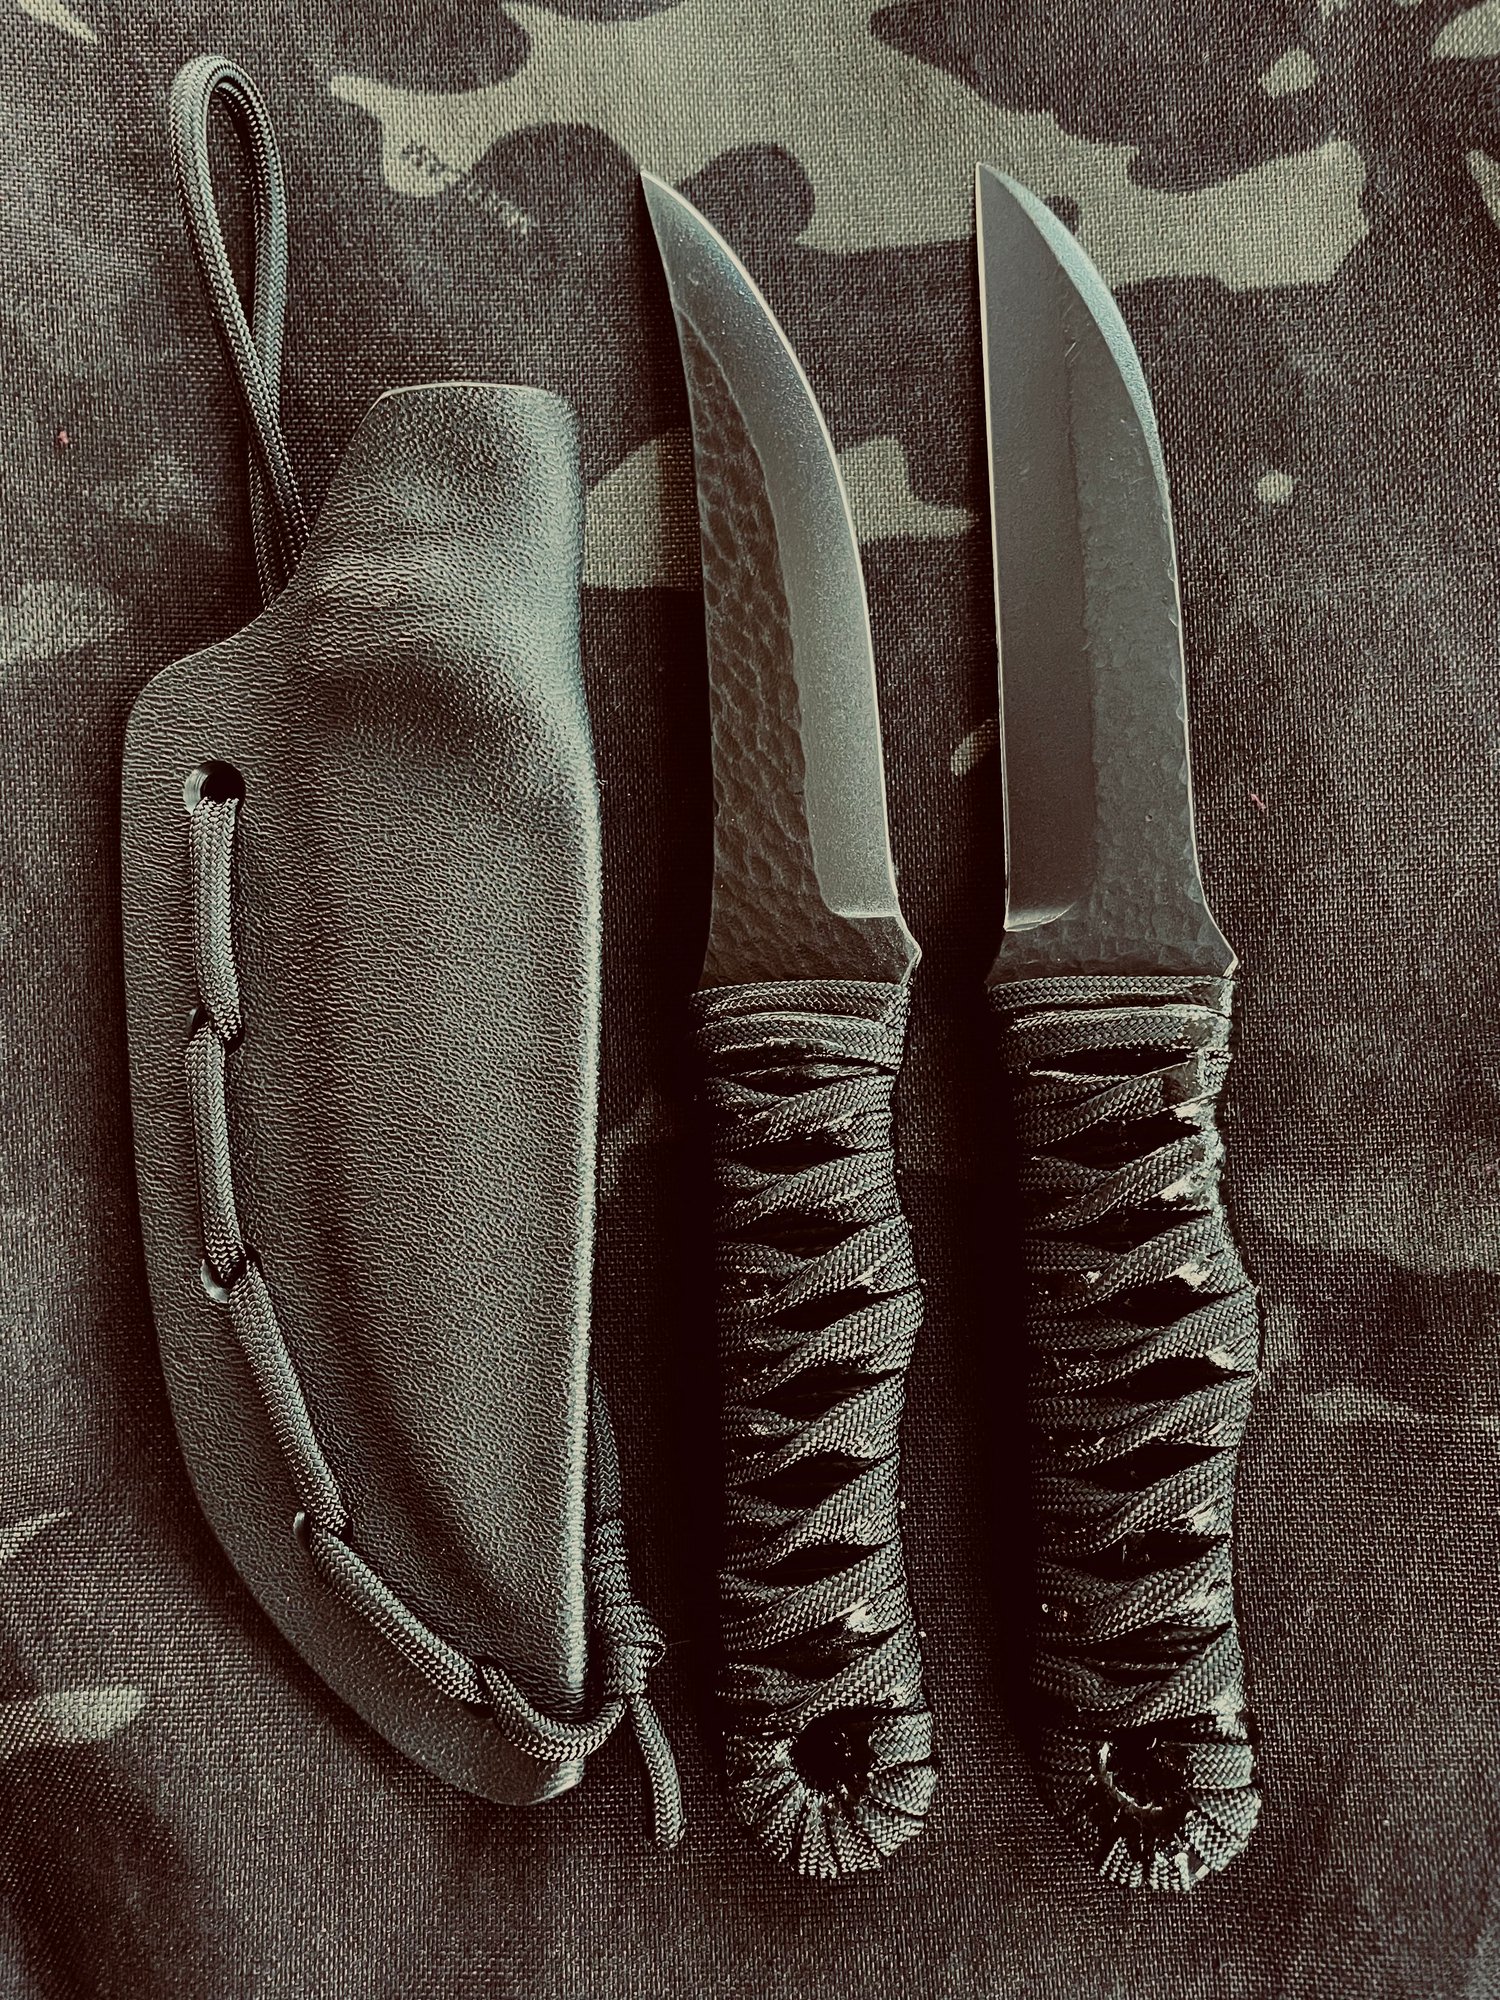 Image of GAIJIN Shuriken // "hidden hand blade” (regular or XL)